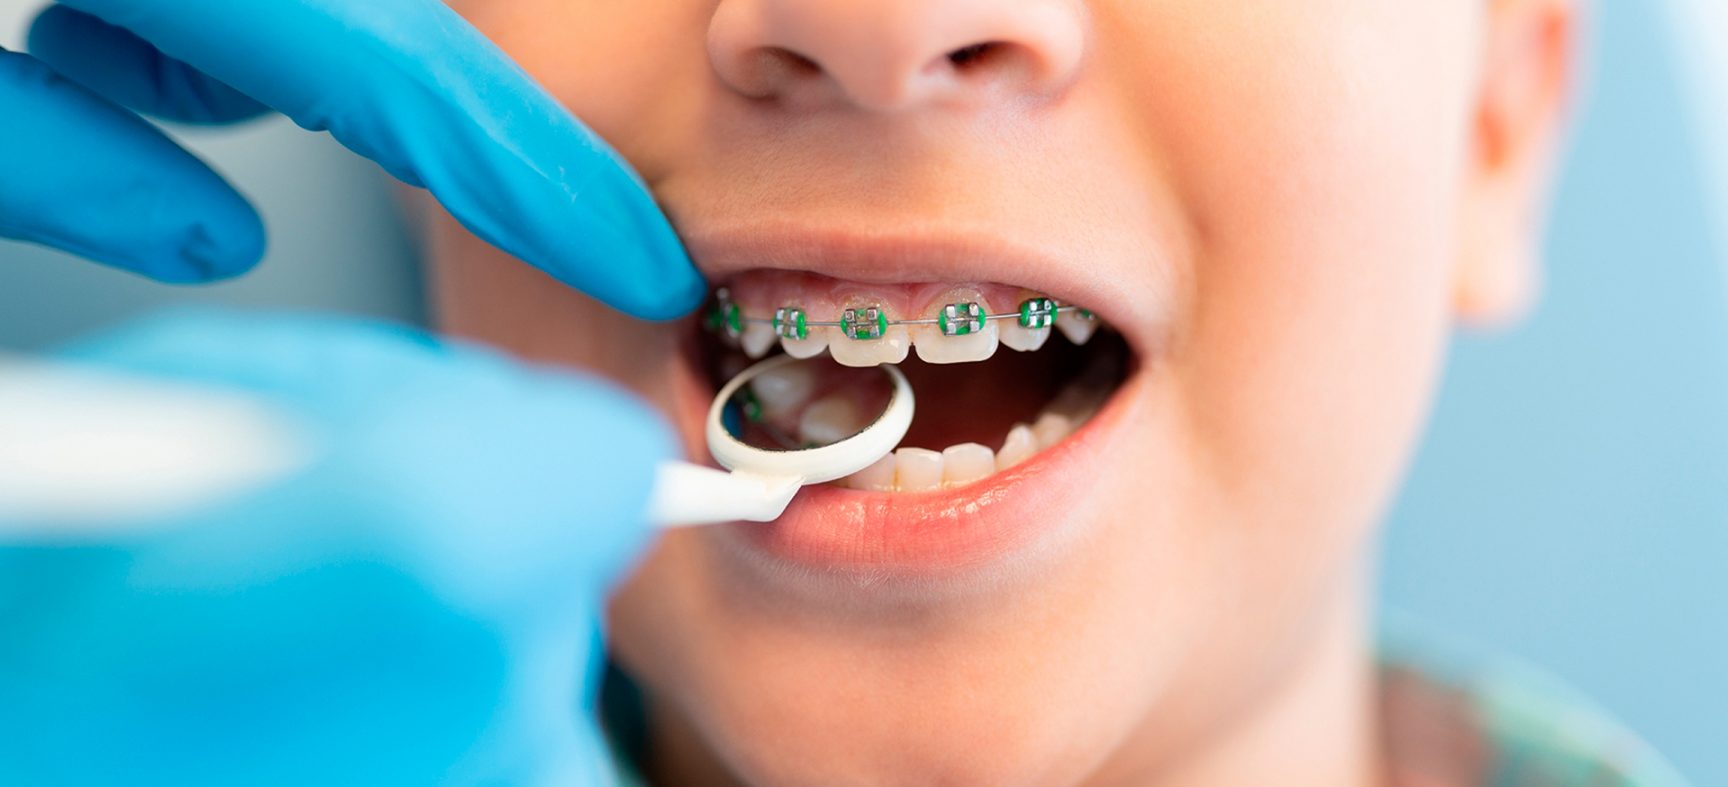 Cómo preparar a tu hijo para su primera visita al ortodoncista